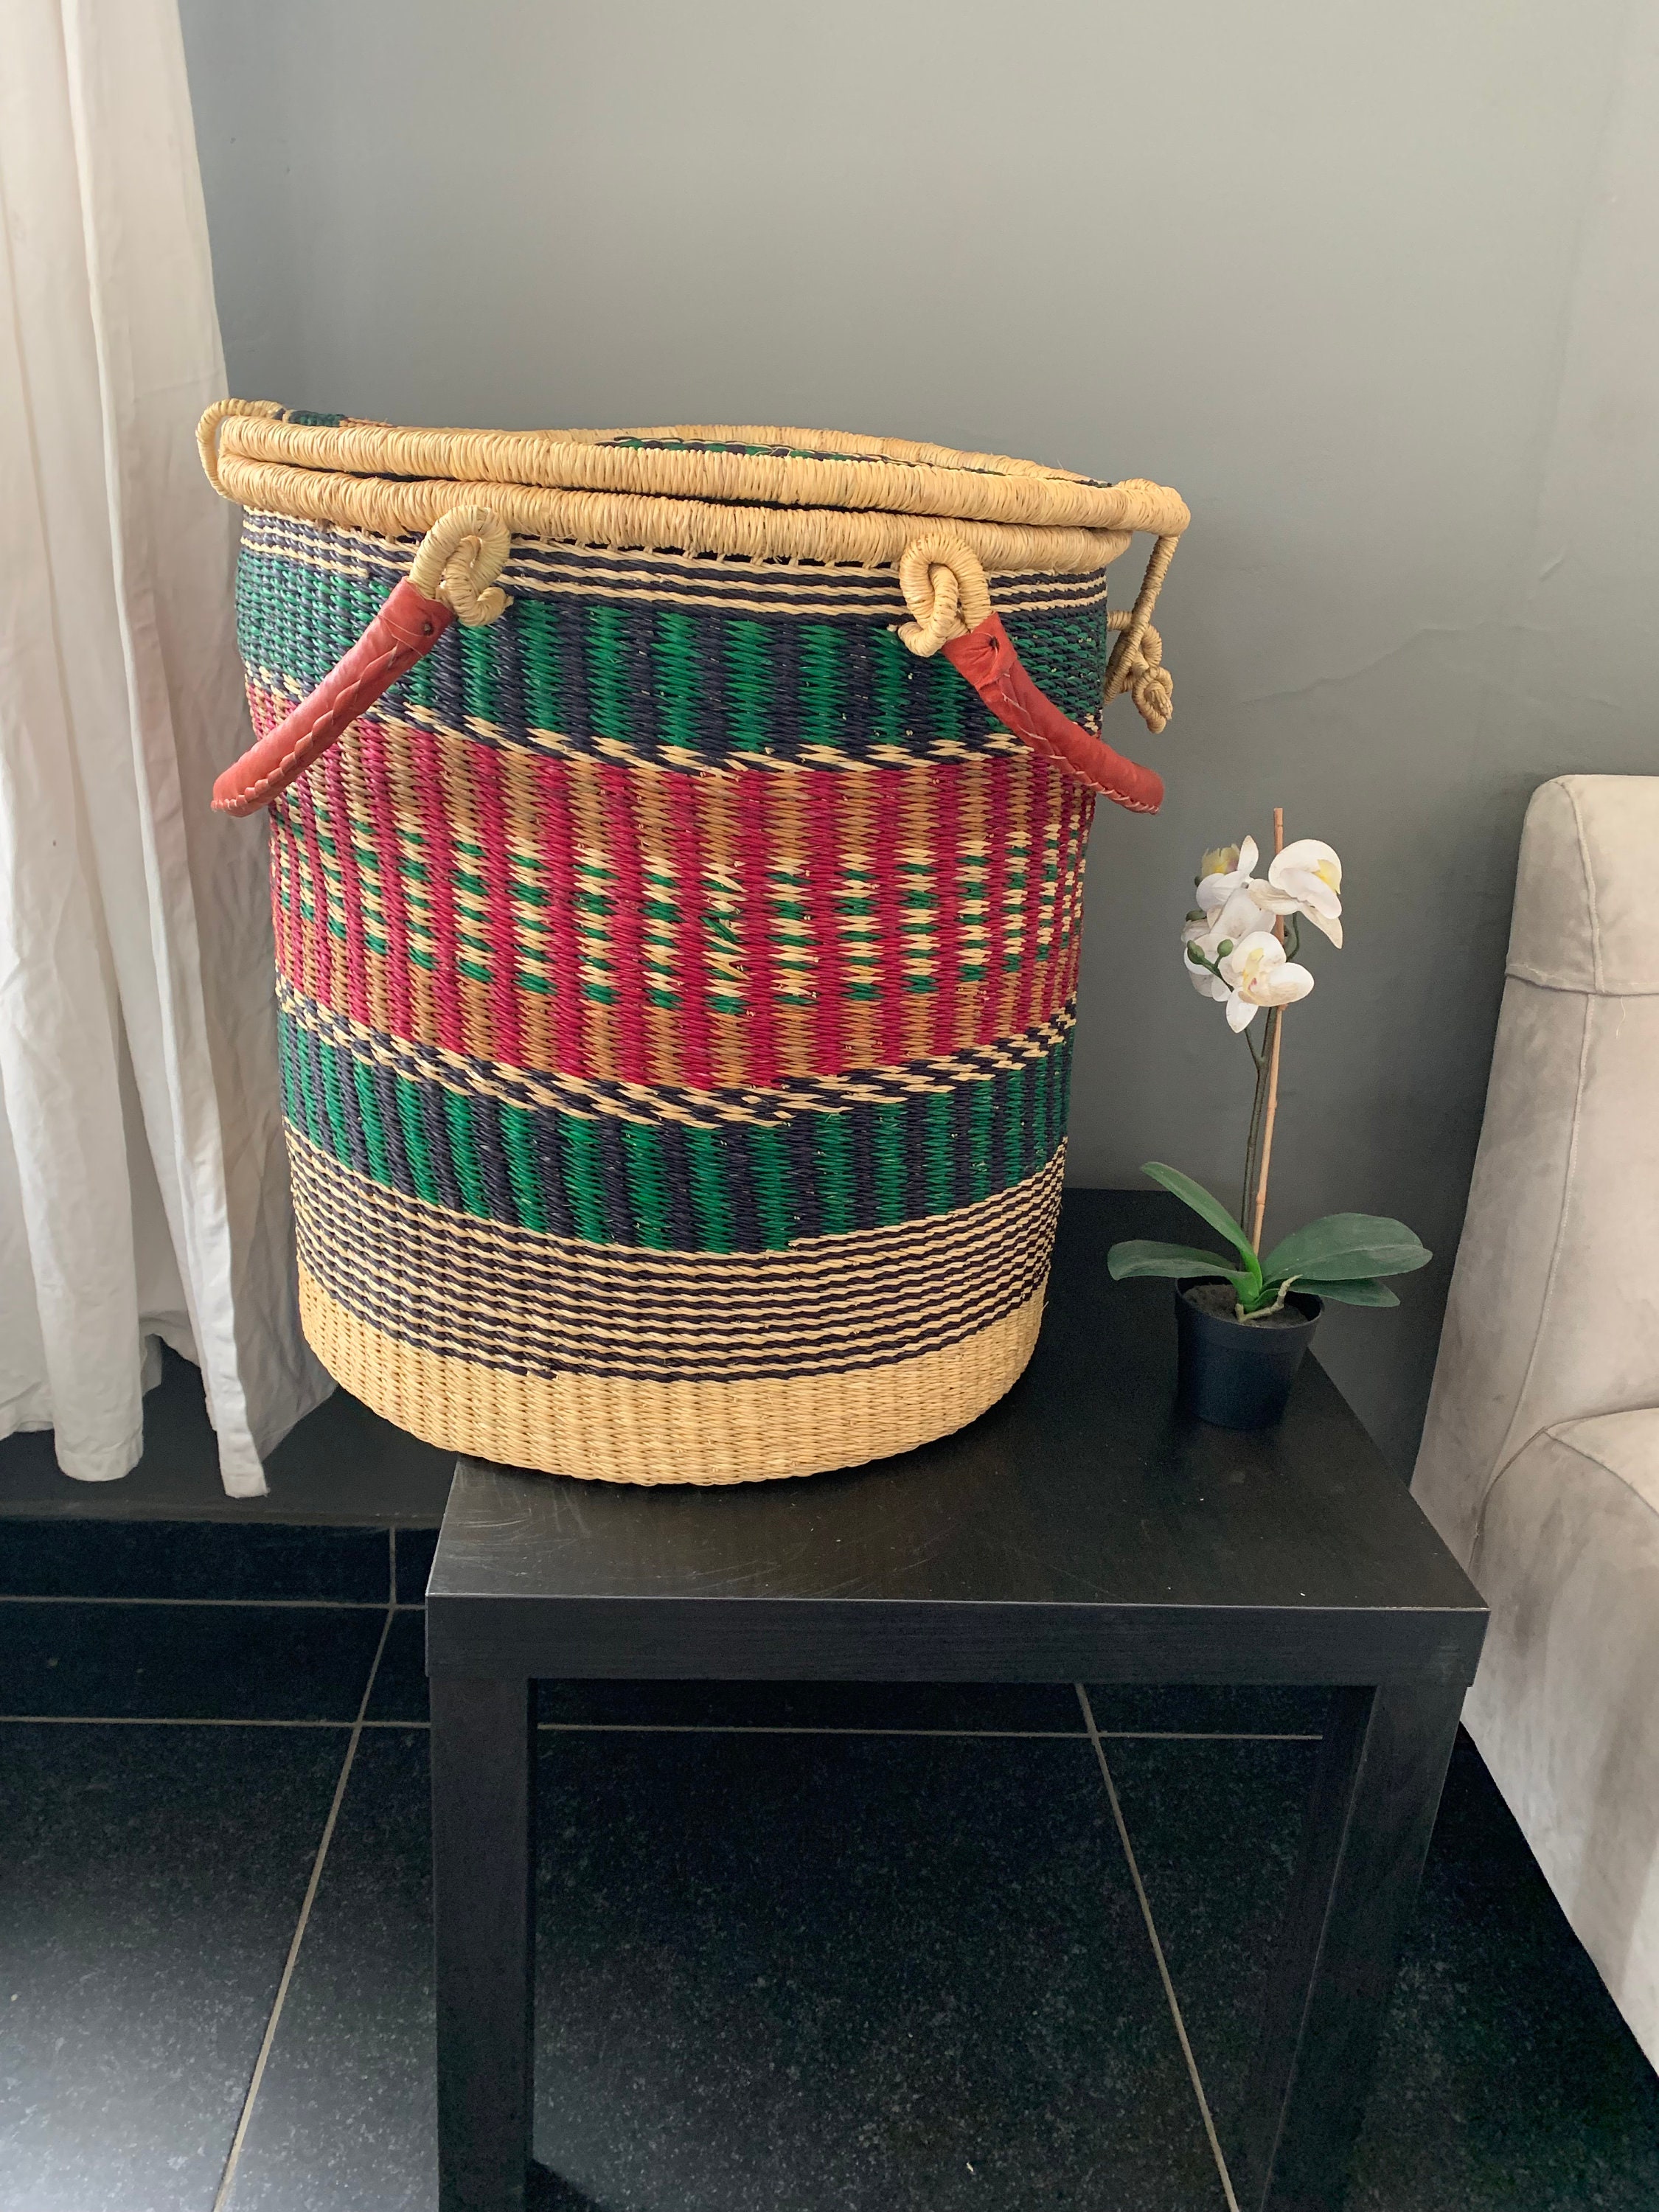 cesta con productos de limpieza para la higiene del hogar 15260327 Foto de  stock en Vecteezy